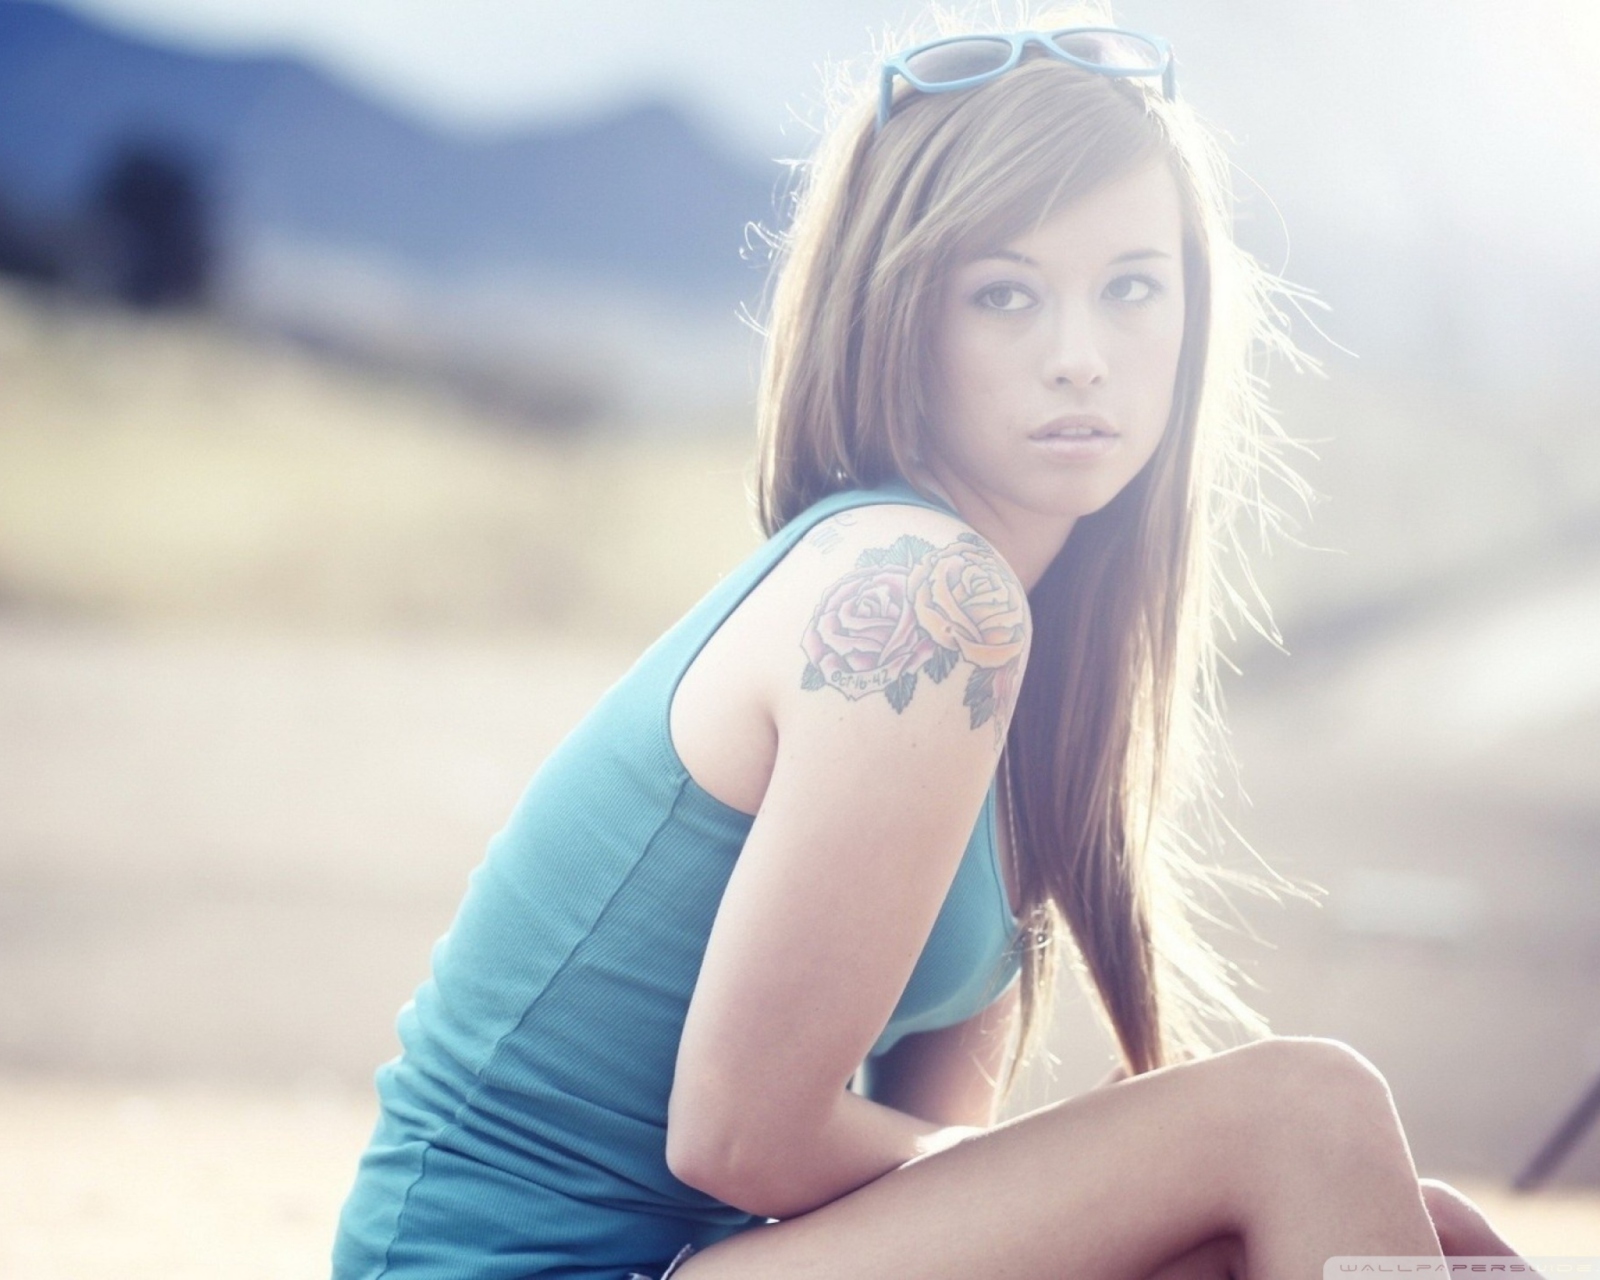 Обои Beautiful Girl With Long Blonde Hair And Rose Tattoo 1600x1280